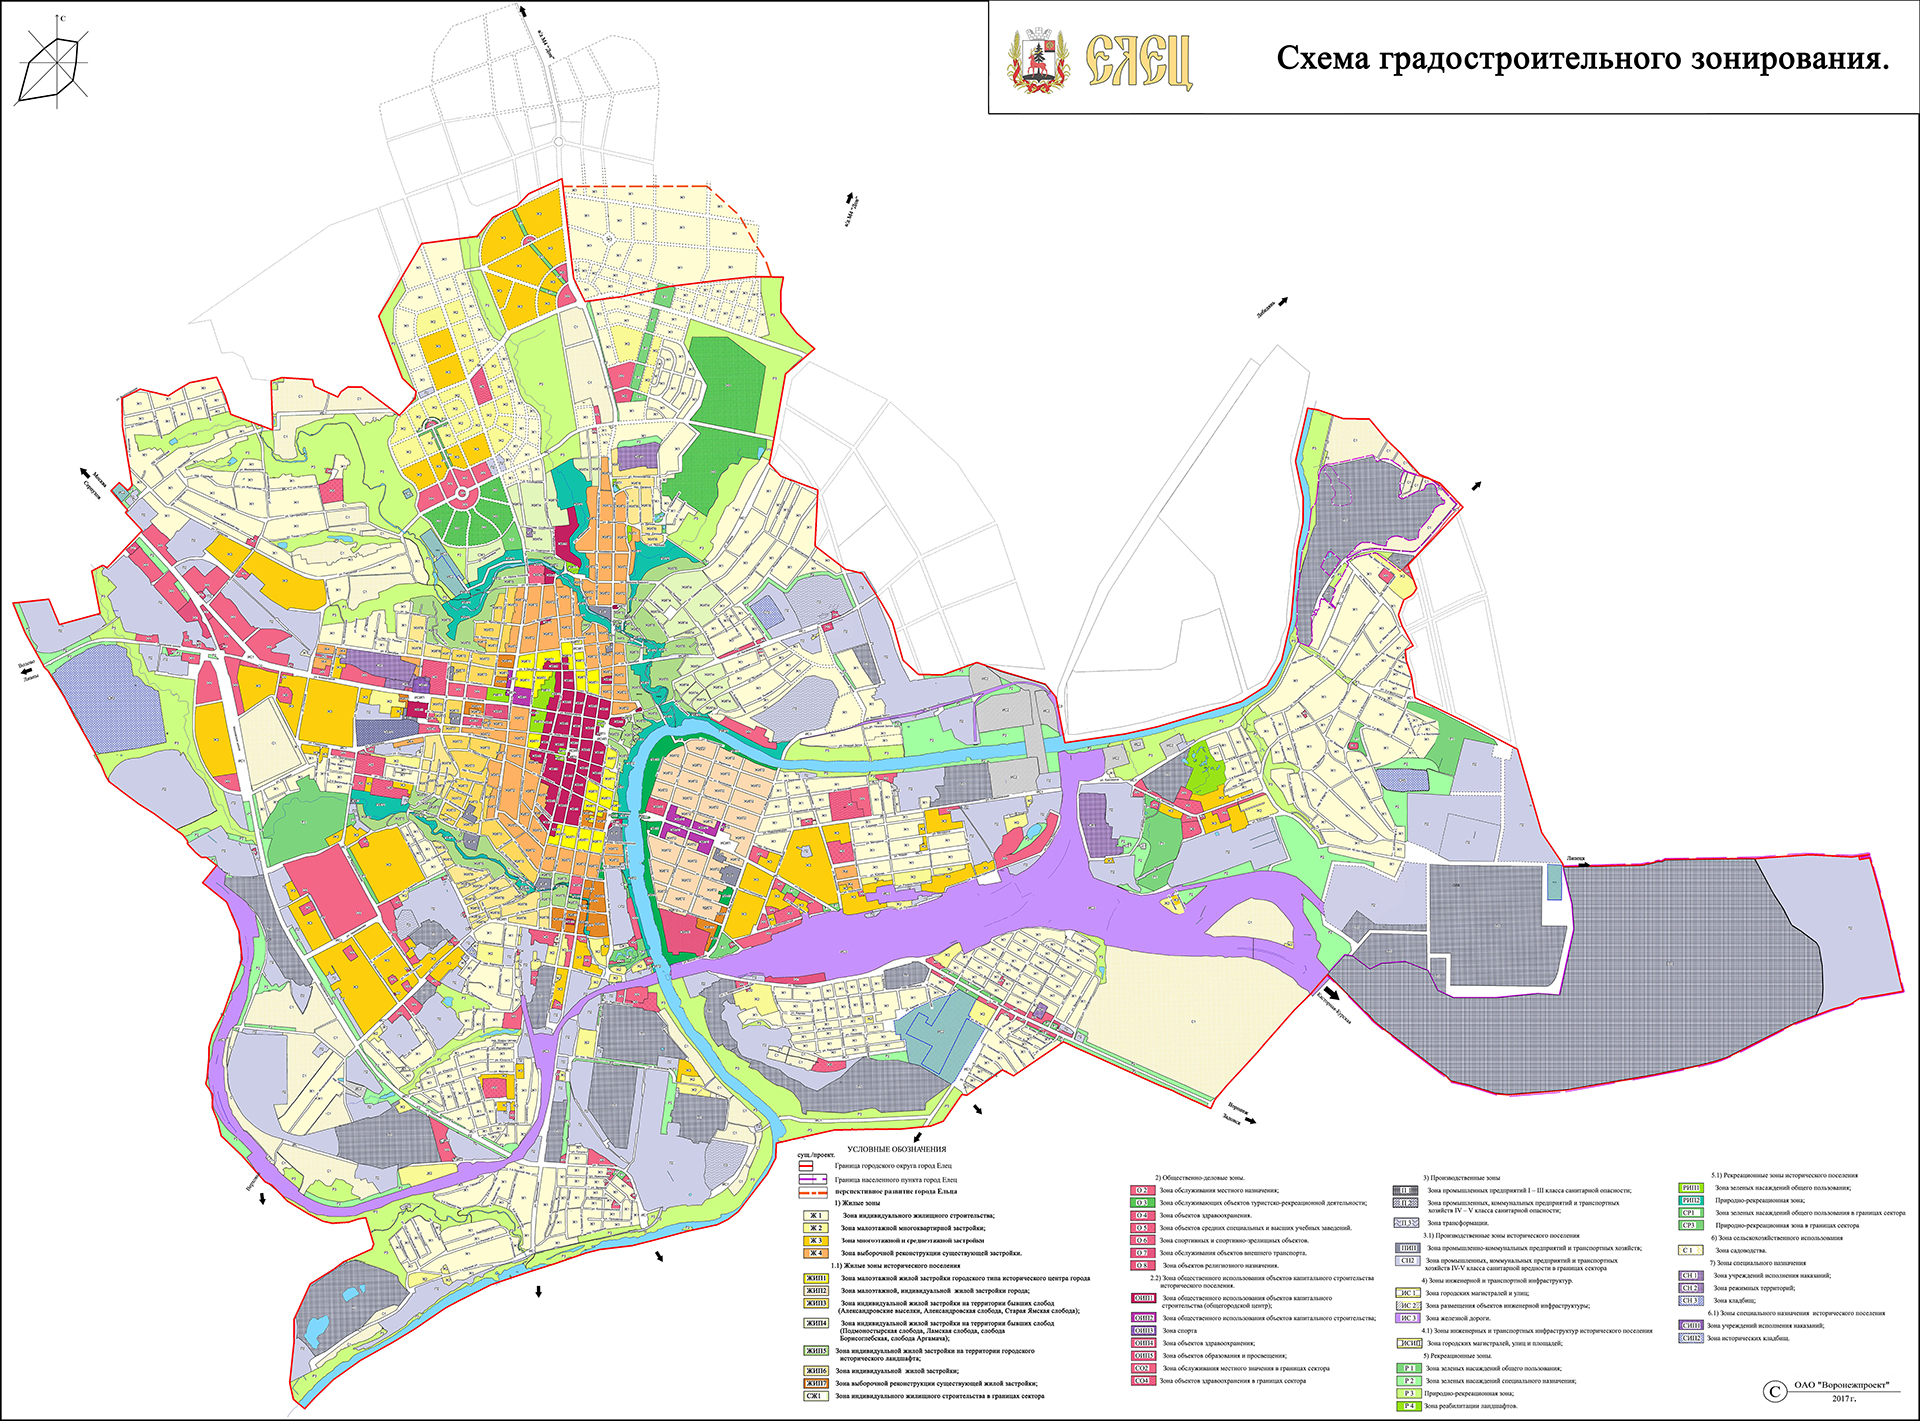 Схема карта градостроительного зонирования